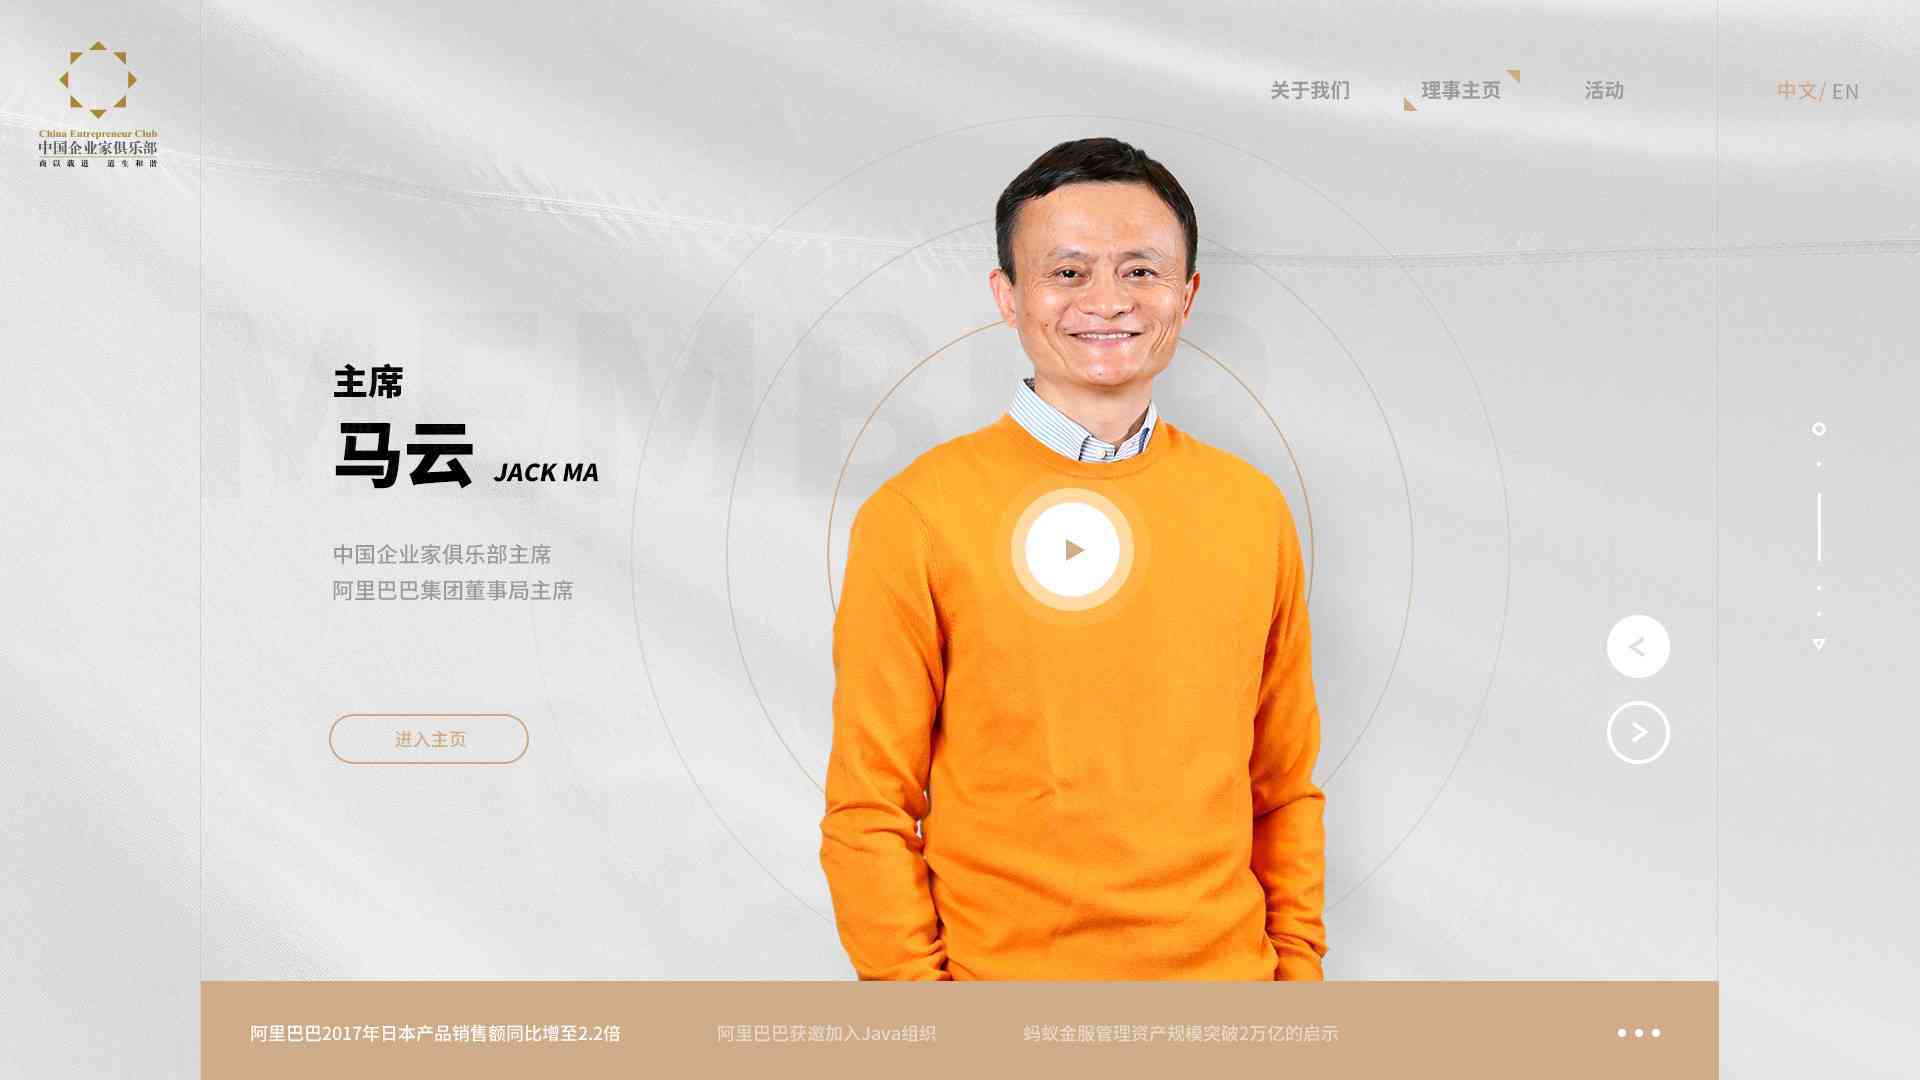 中國企業家俱樂部網站設計圖片素材